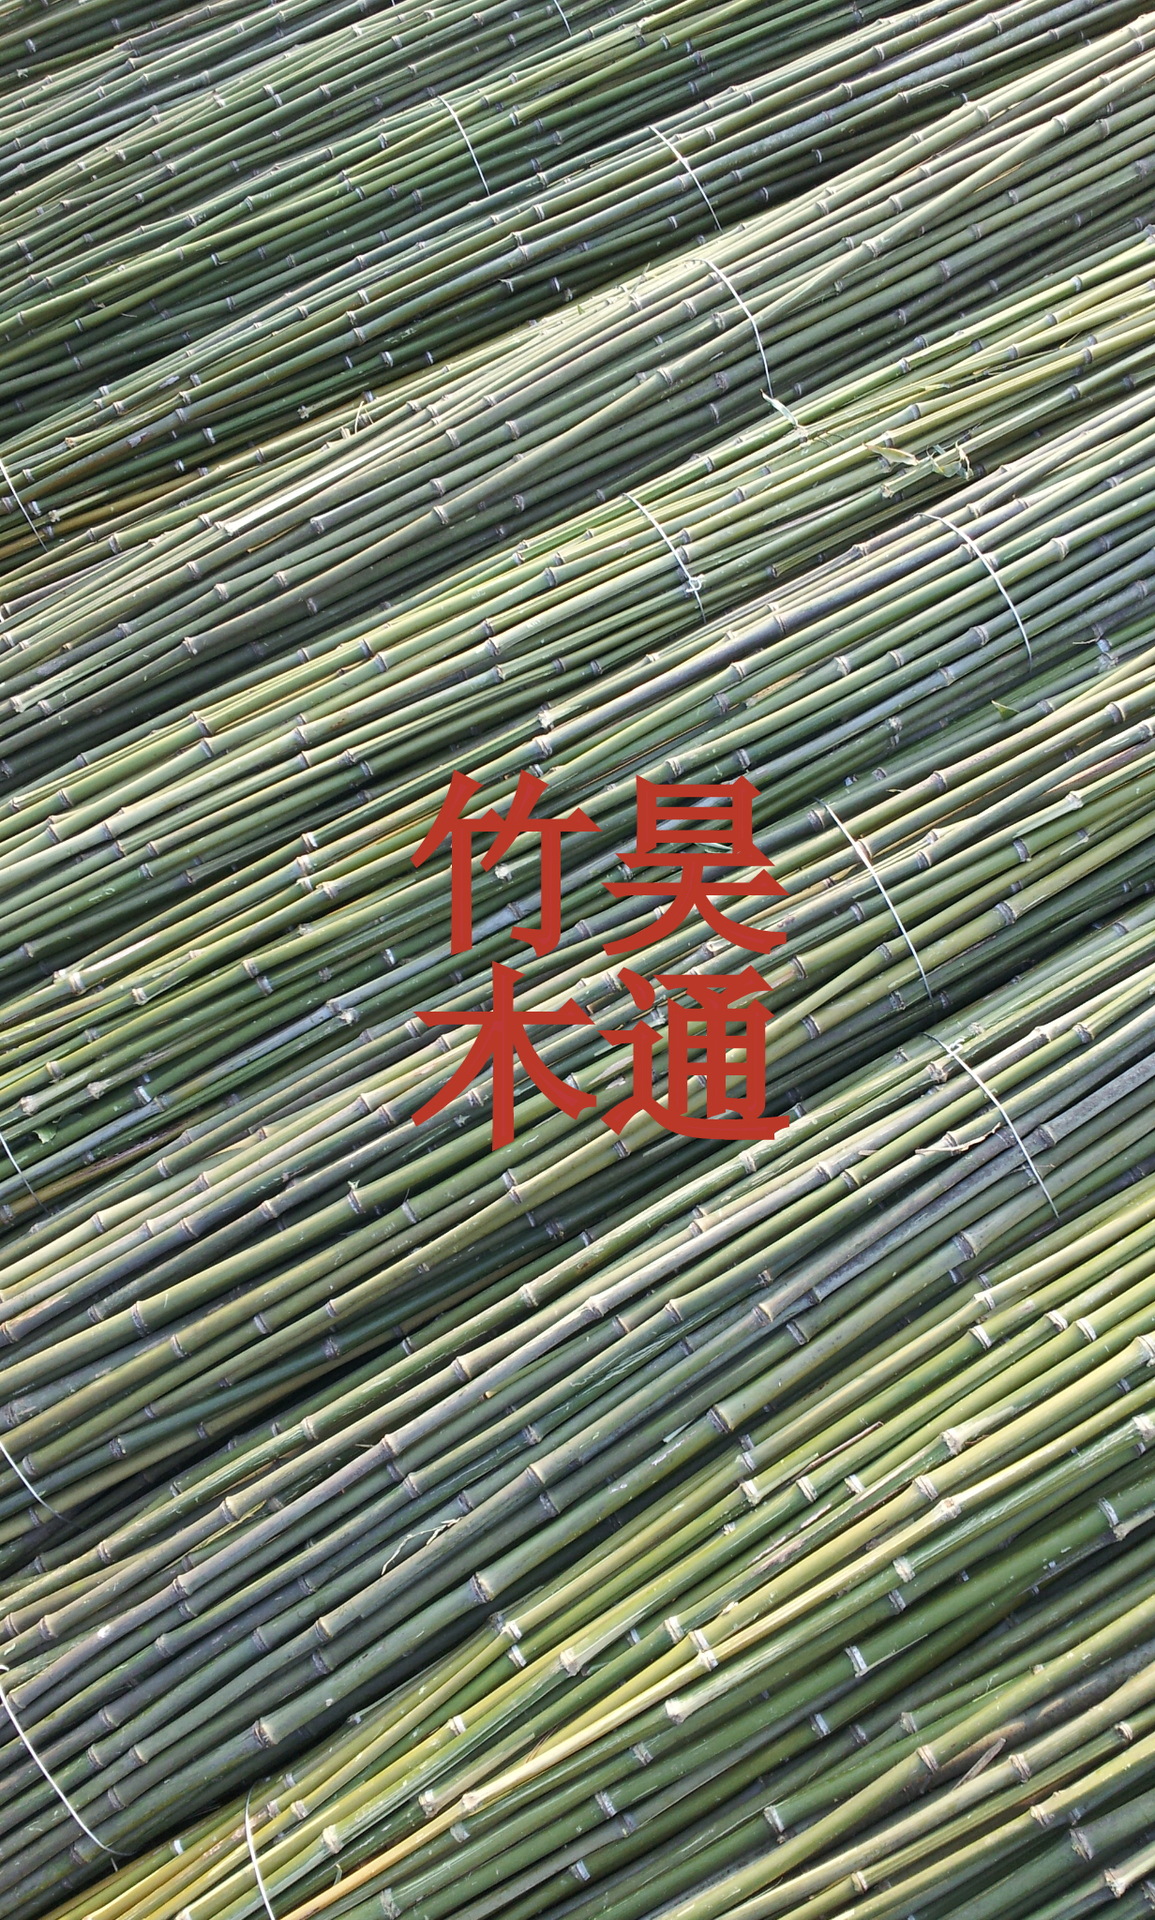 【2020】 雪峰山2.3米、2.5米、3米菜架竹、竹竿、架材、竹架条 、小竹竿